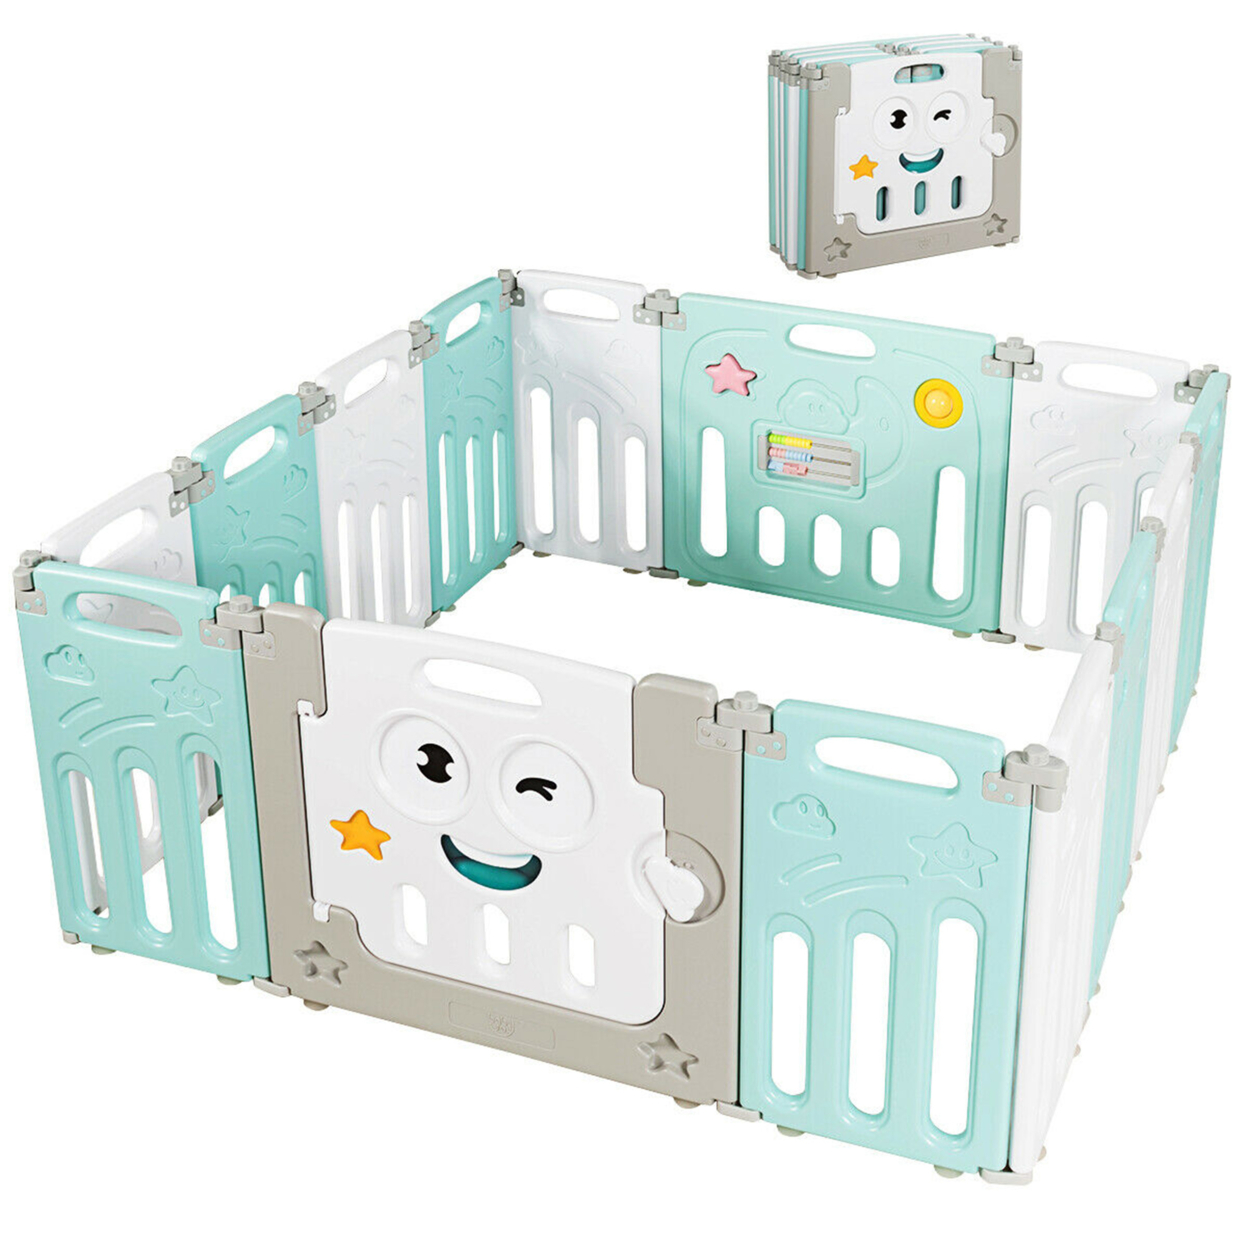 14-Panel Foldable Baby Playpen Kids Activity Centre W/ Rubber Mats & Lock Door